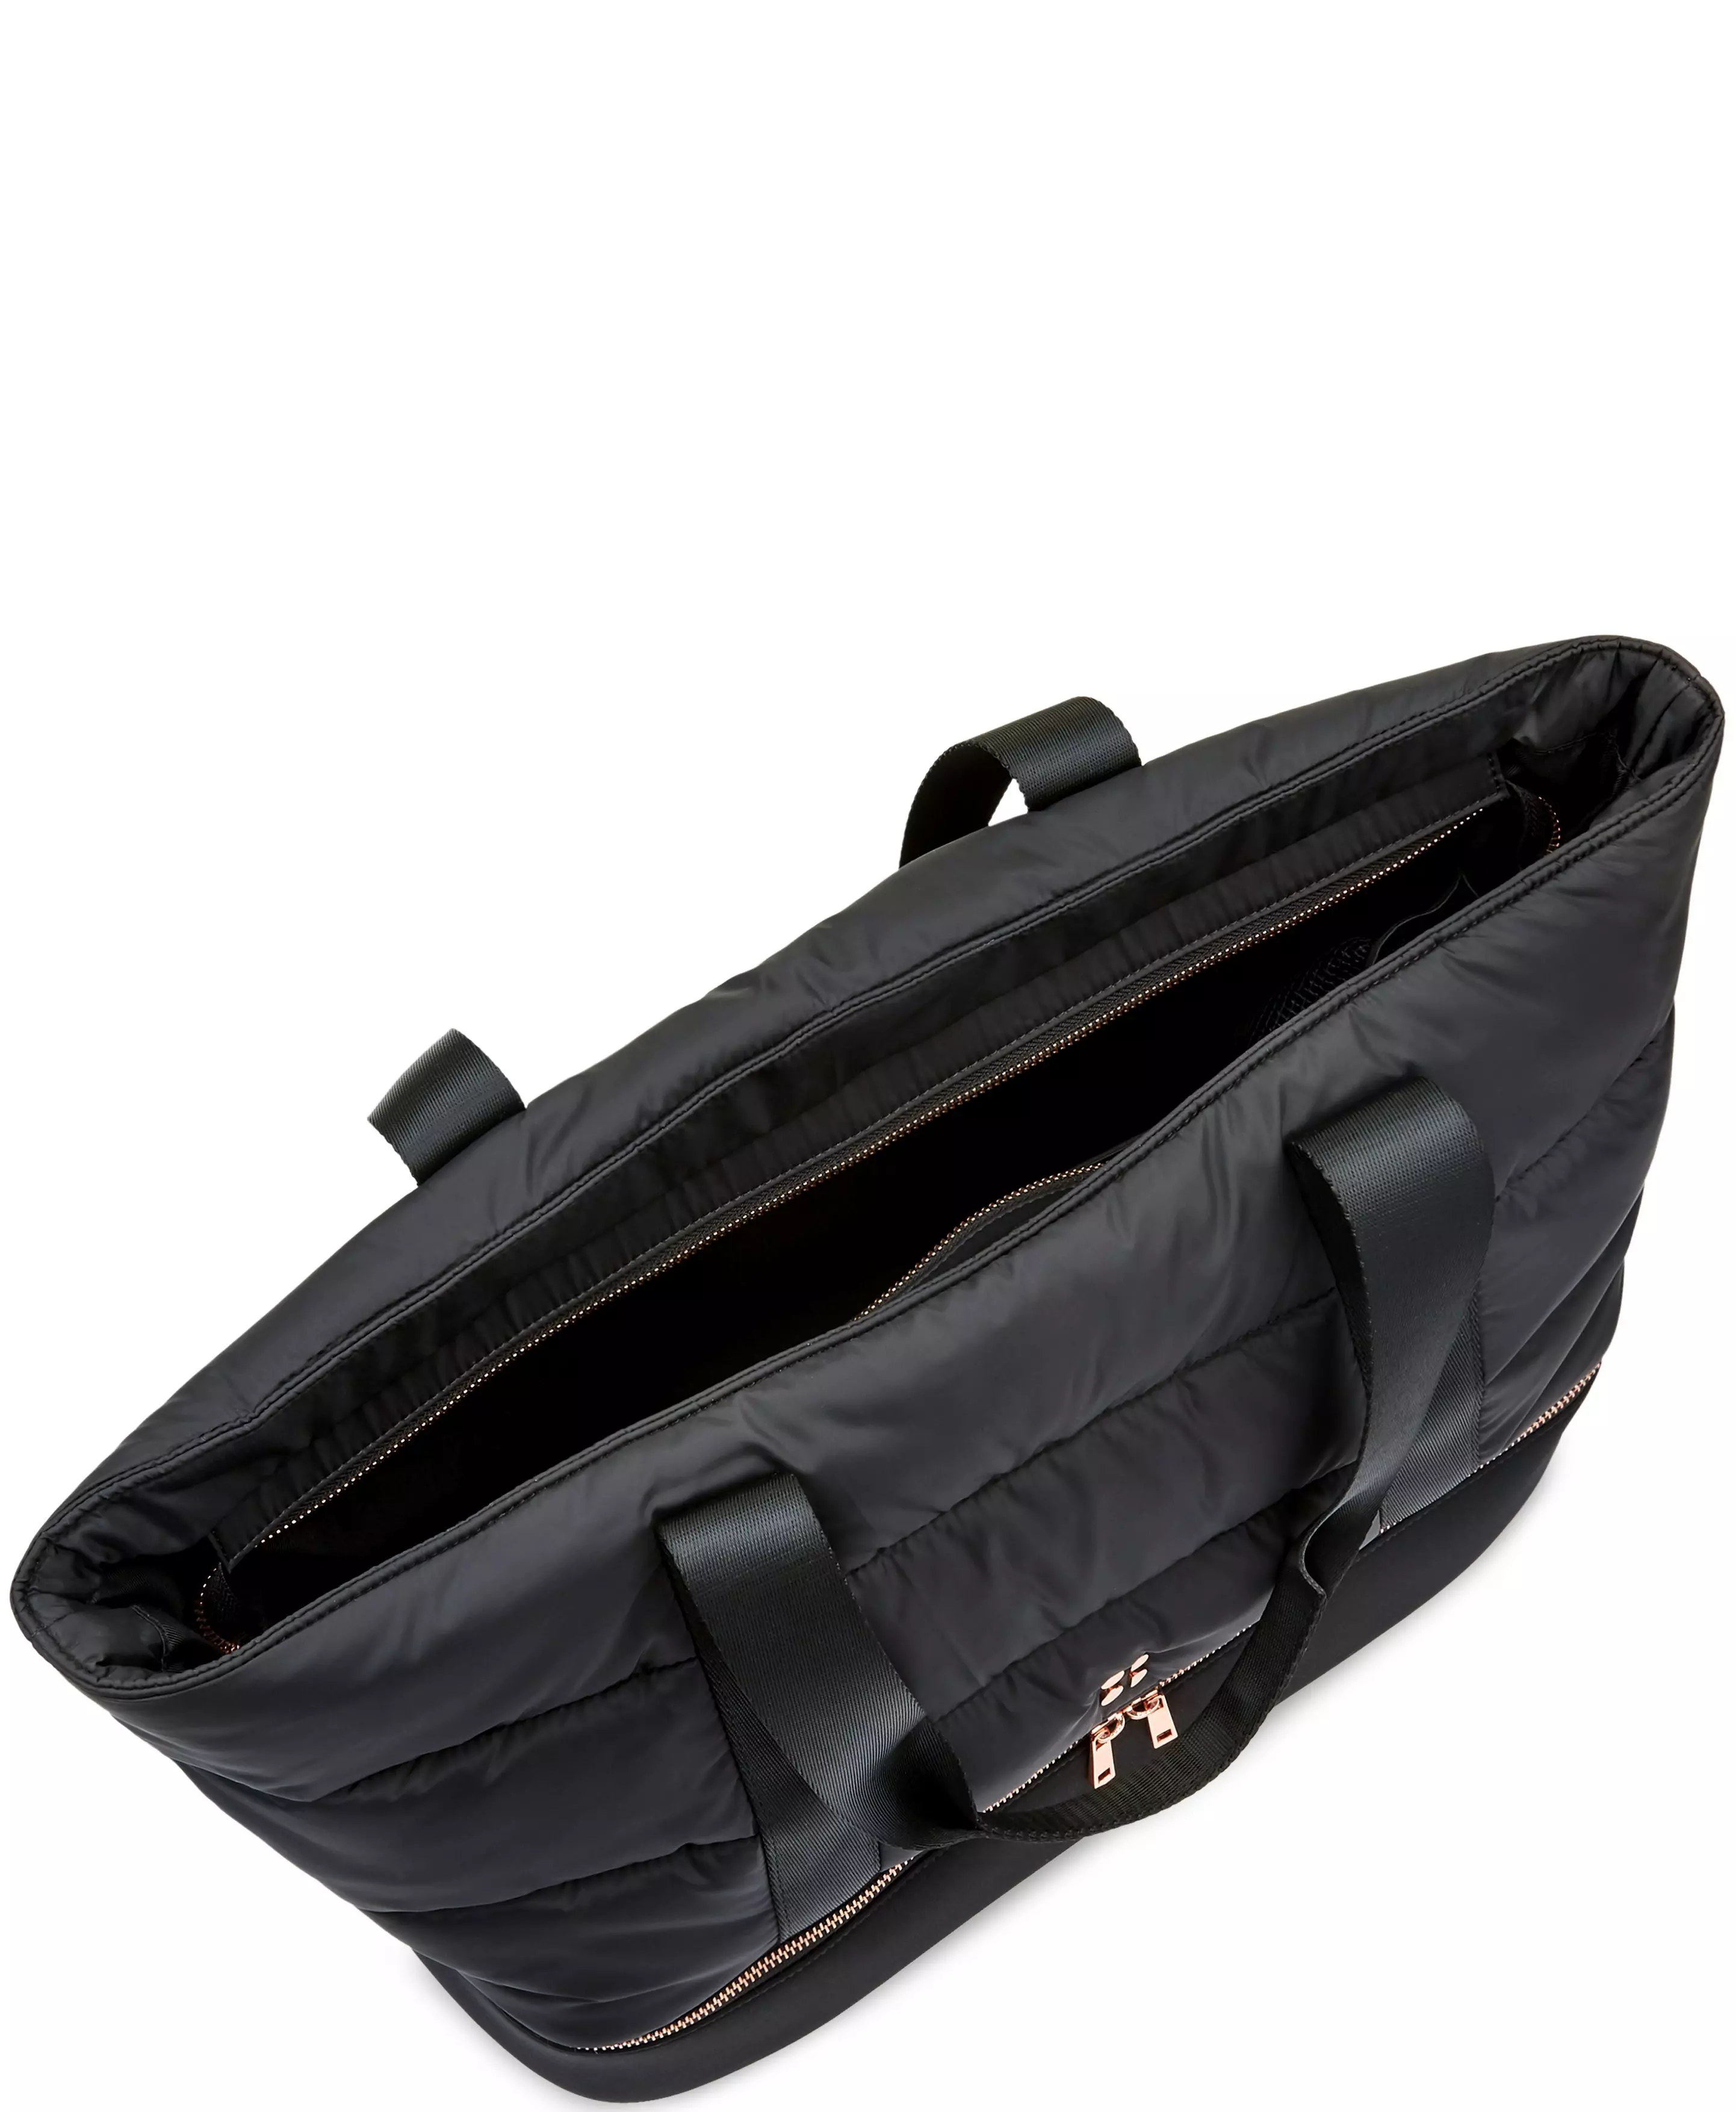 luxe kit bag black